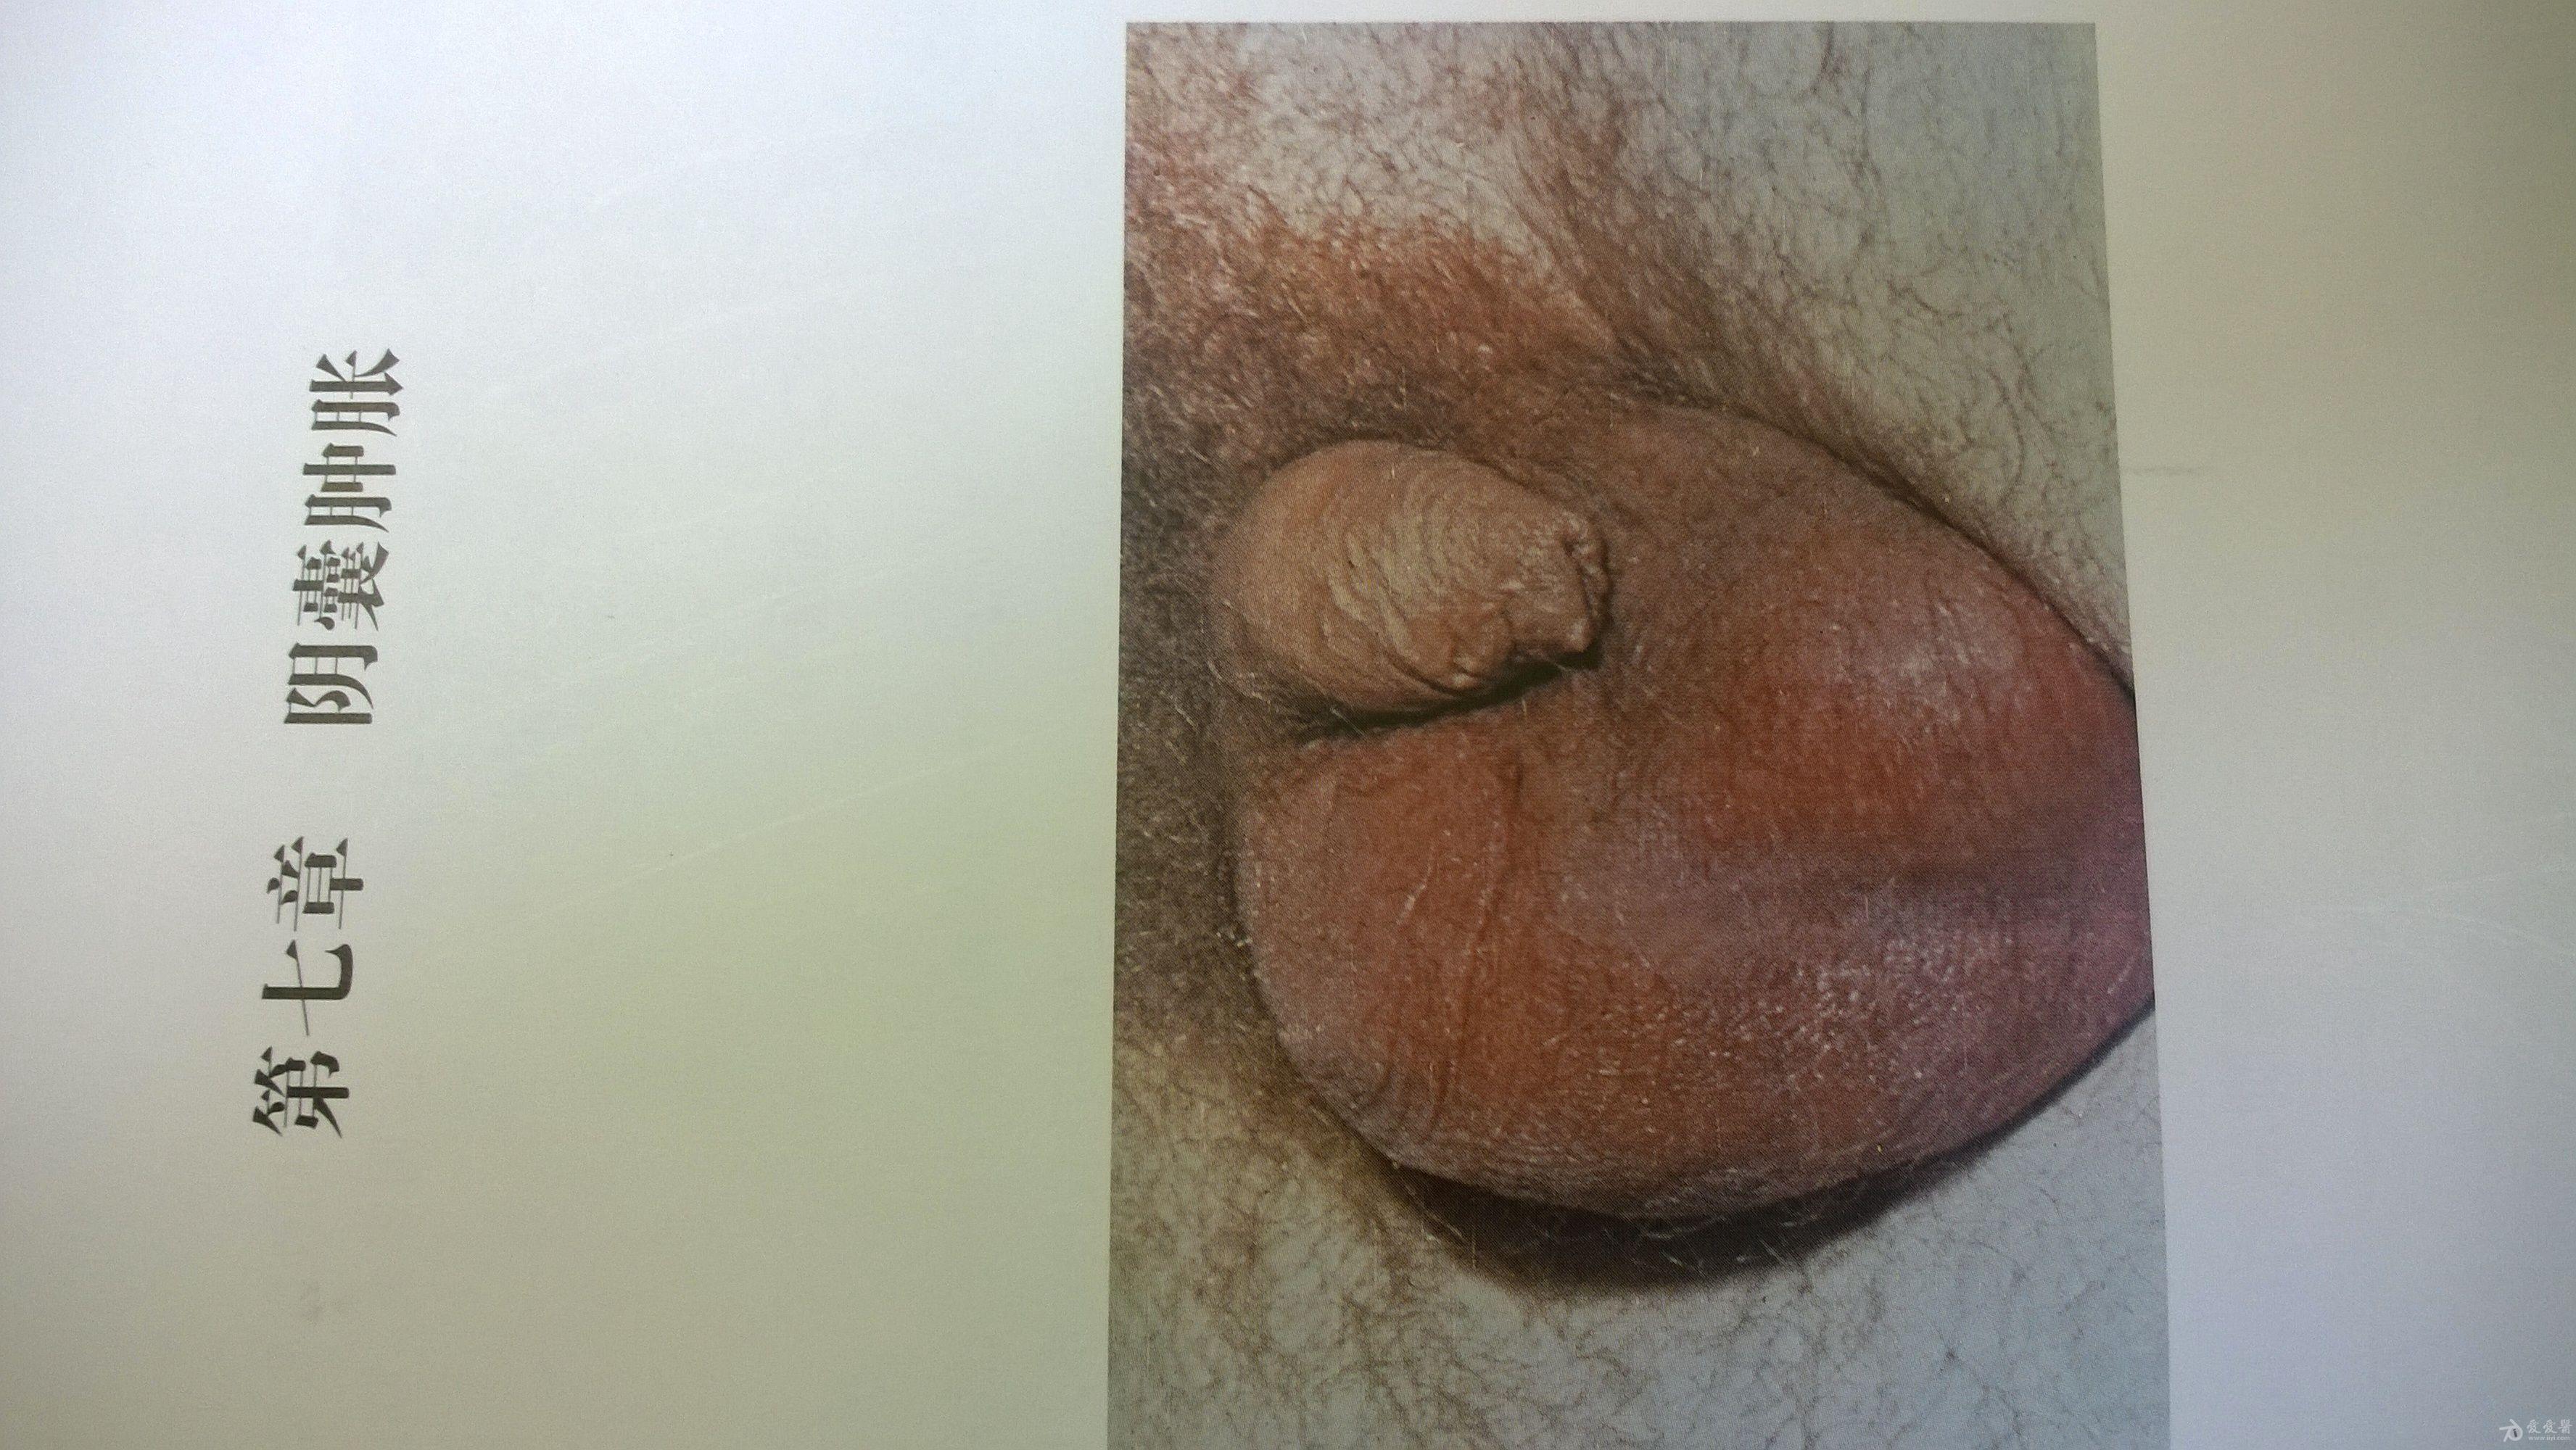 6,腹股沟横痃  7,新生儿眼炎    一,男性尿道分泌物     二,阴囊肿胀